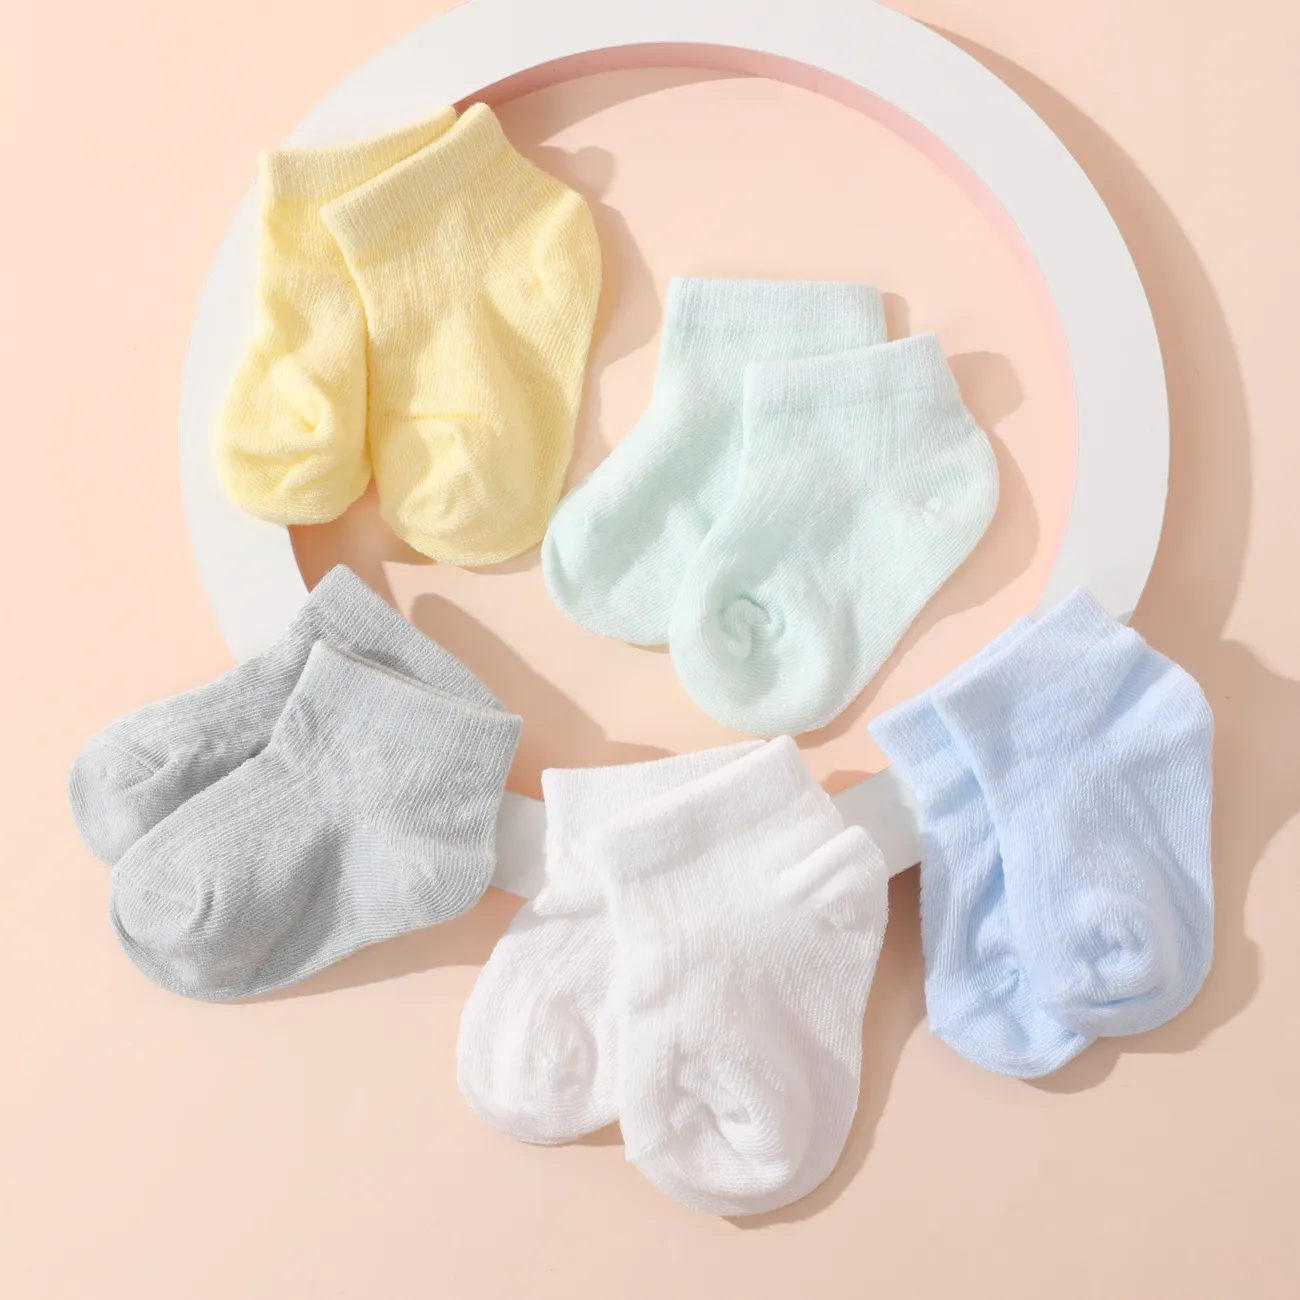 5er-Pack Baby / Kleinkind / Kind Pure Color atmungsaktive Socken Set Mehrfarbig big image 1